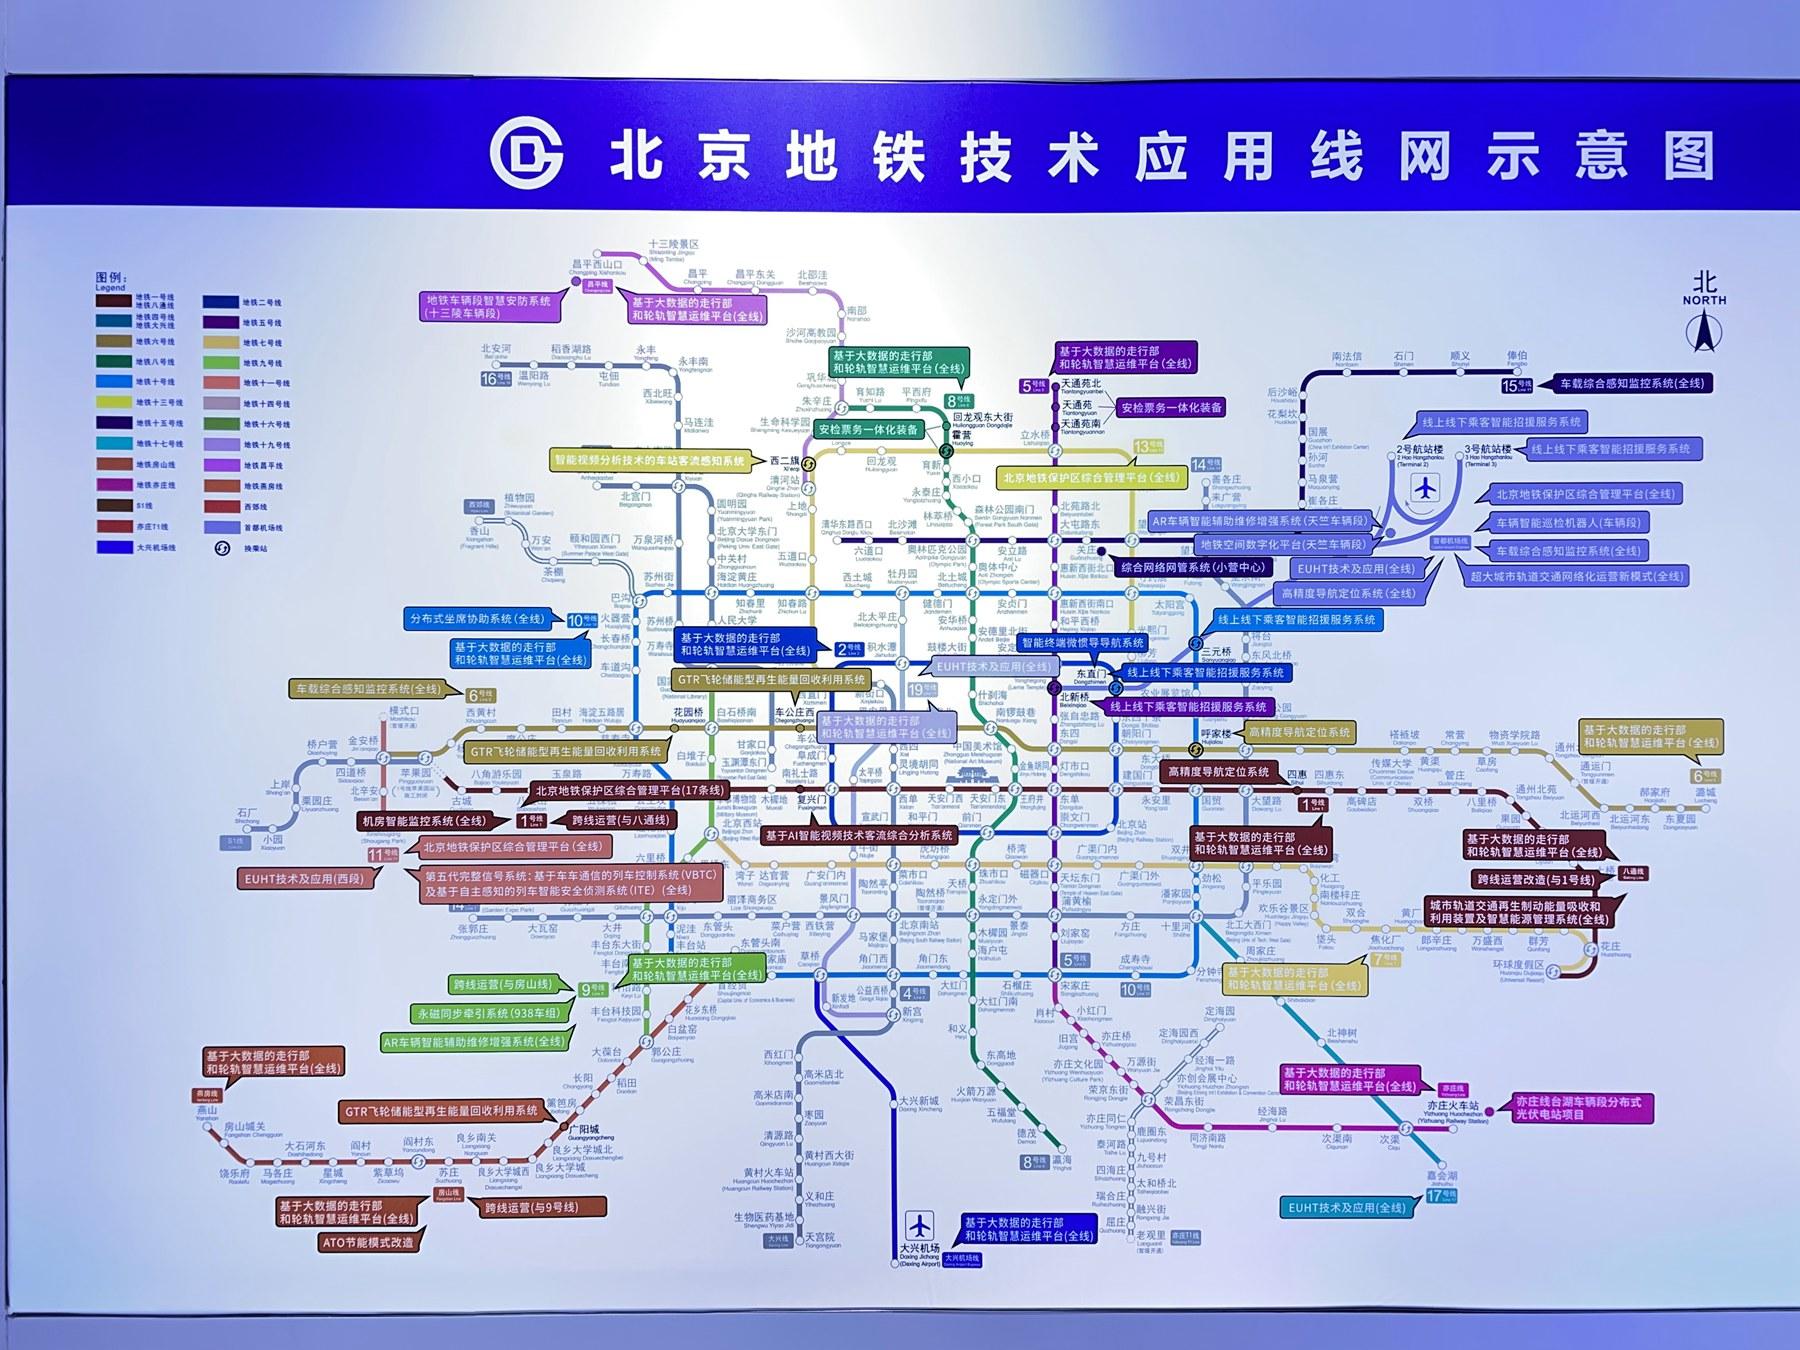 服贸会交通板块,北京地铁亮出秘密“武器”